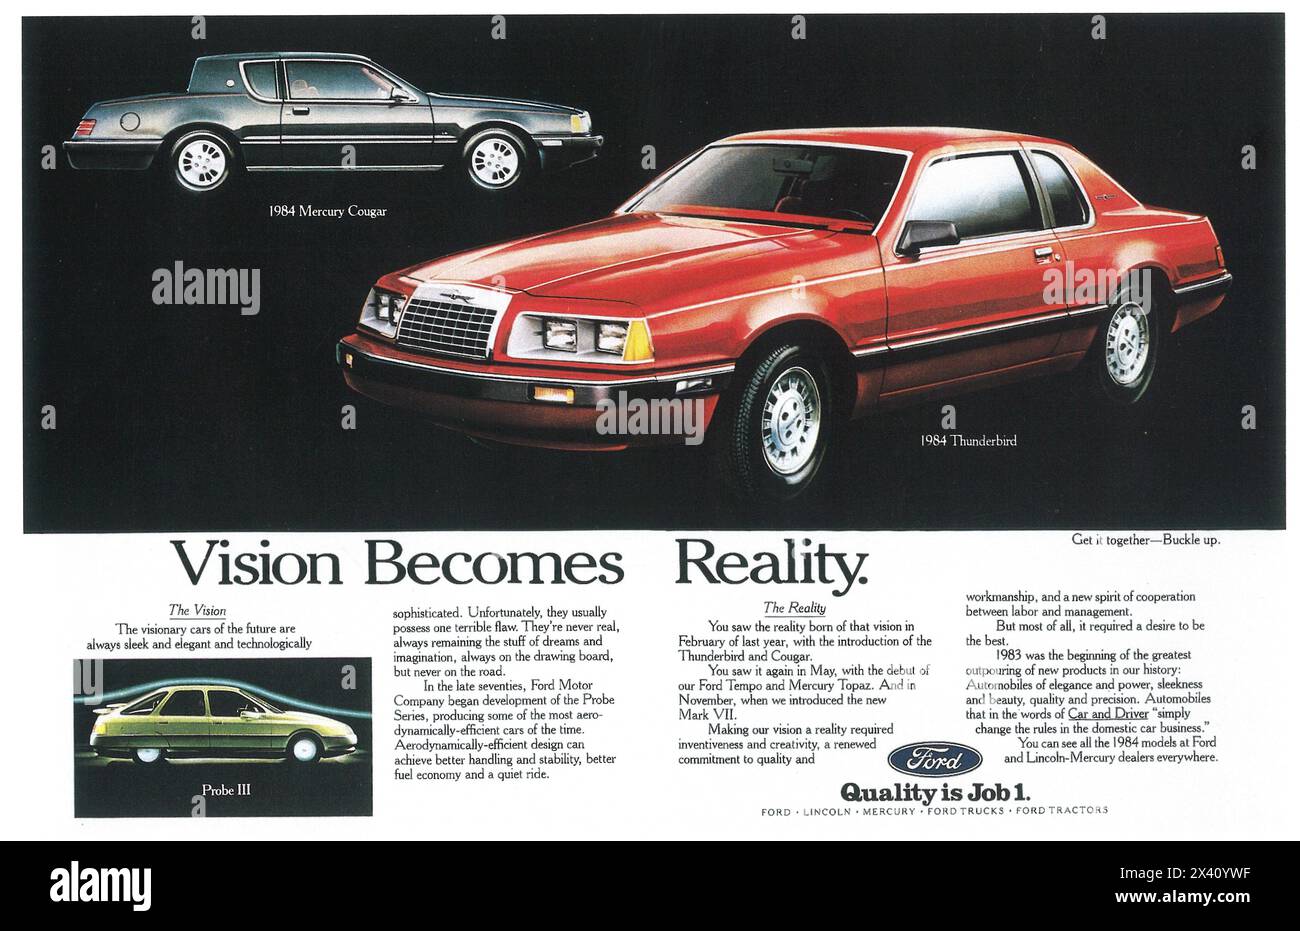 1984 Ford Thunderbird Cougar Probe ad: La visione diventa realtà Foto Stock